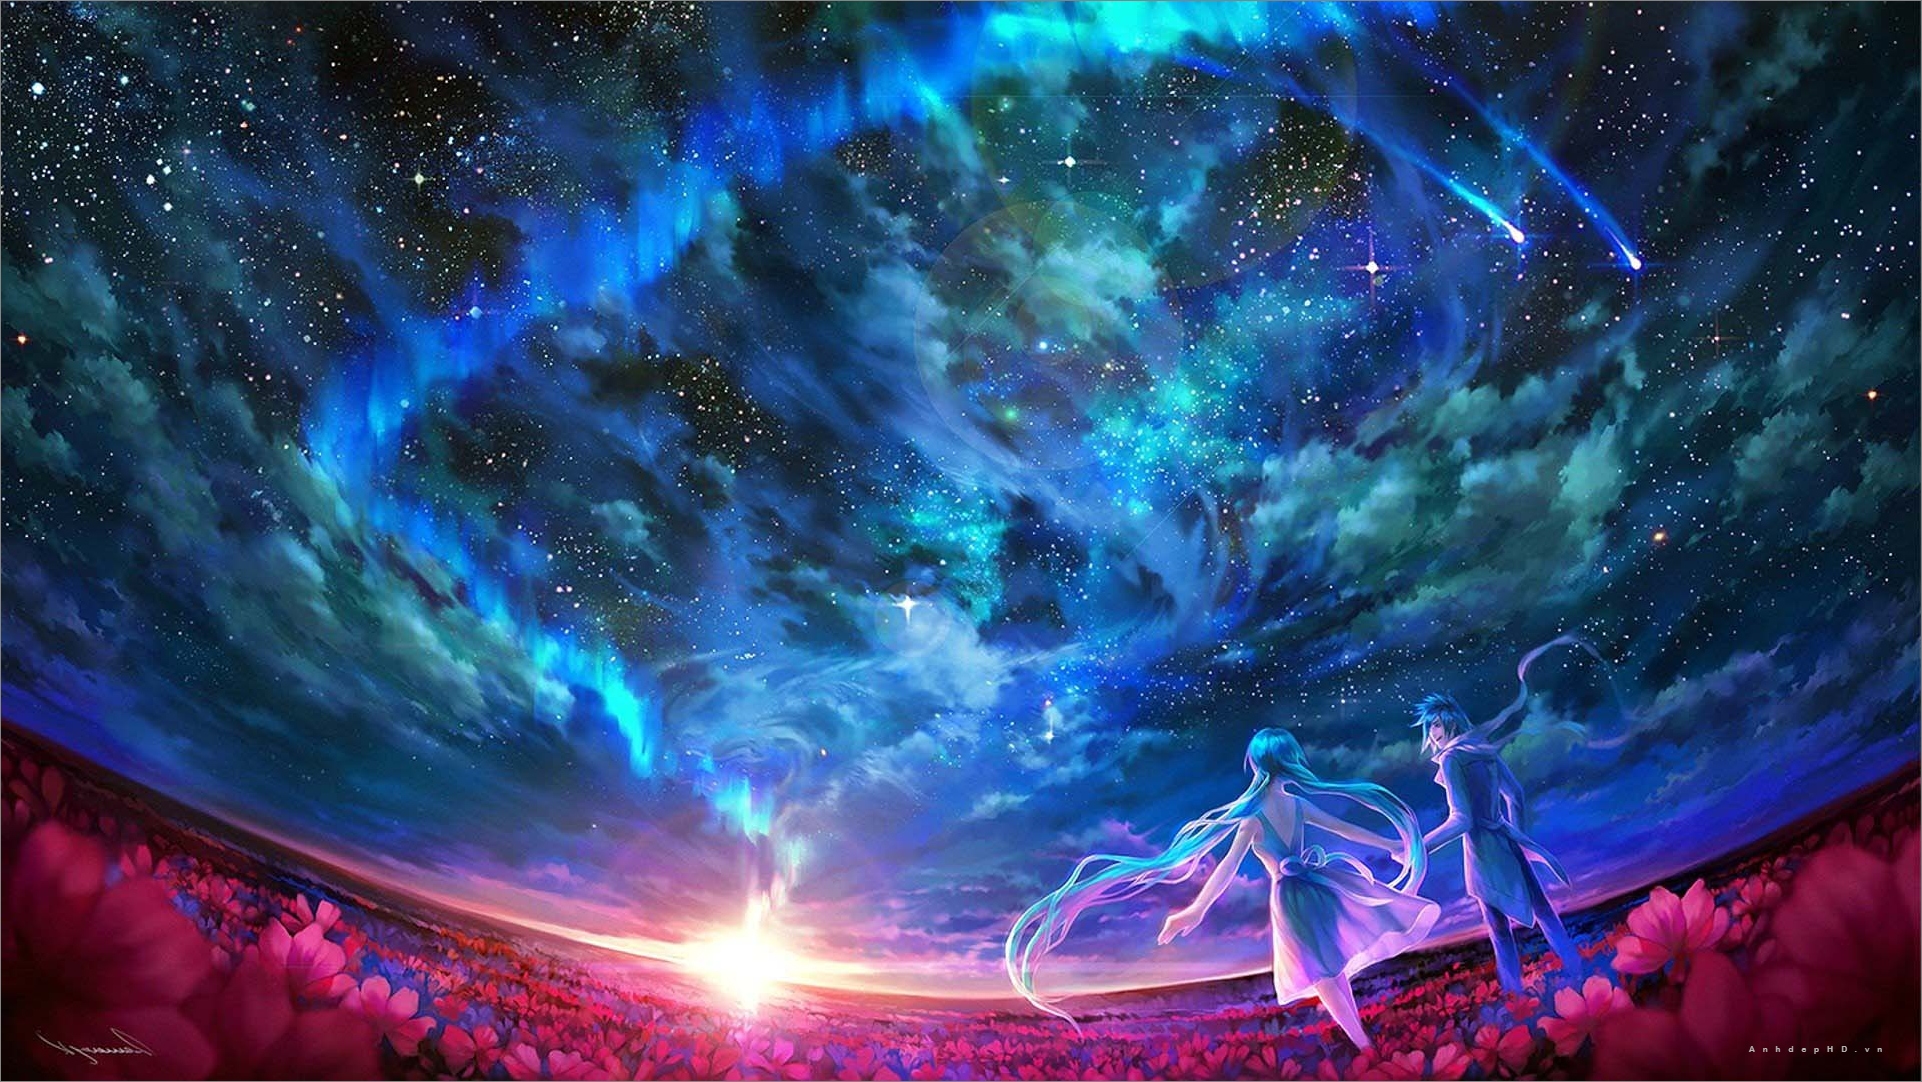 Hình Ảnh Anime Galaxy Đẹp Lung Linh, Lấp Lánh Tuyệt Vời